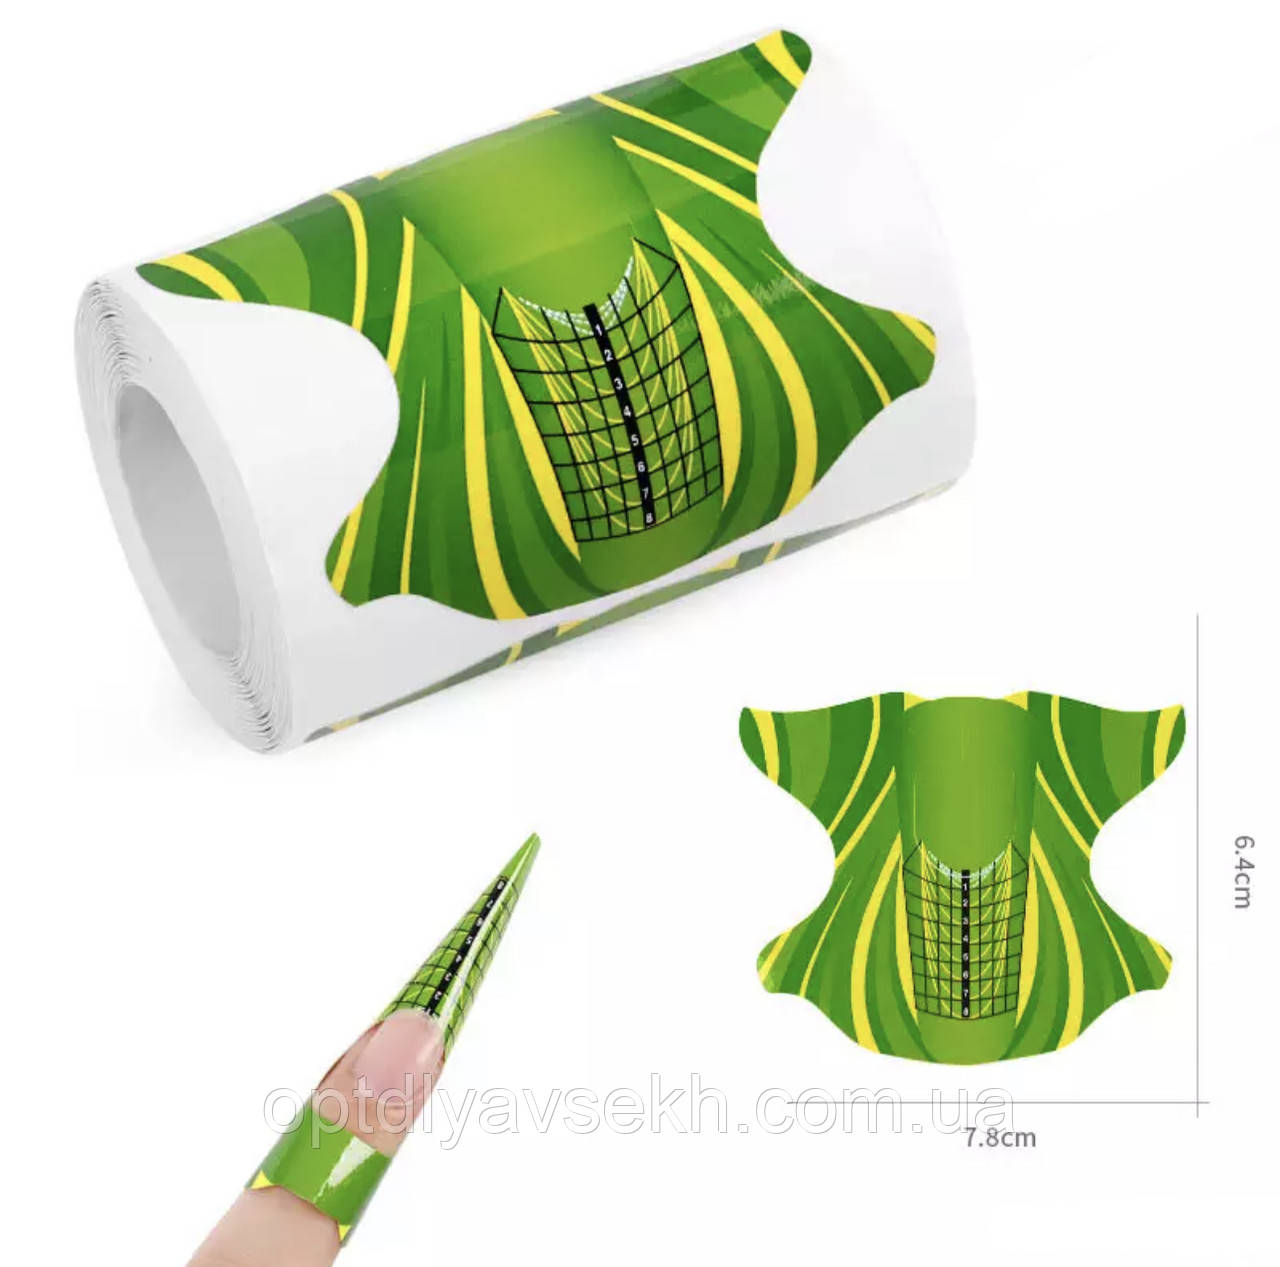 Форми паперові в рулоні (300 шт.) 6.4 см х 7.8 см "Зелений" - для нарощування нігтів